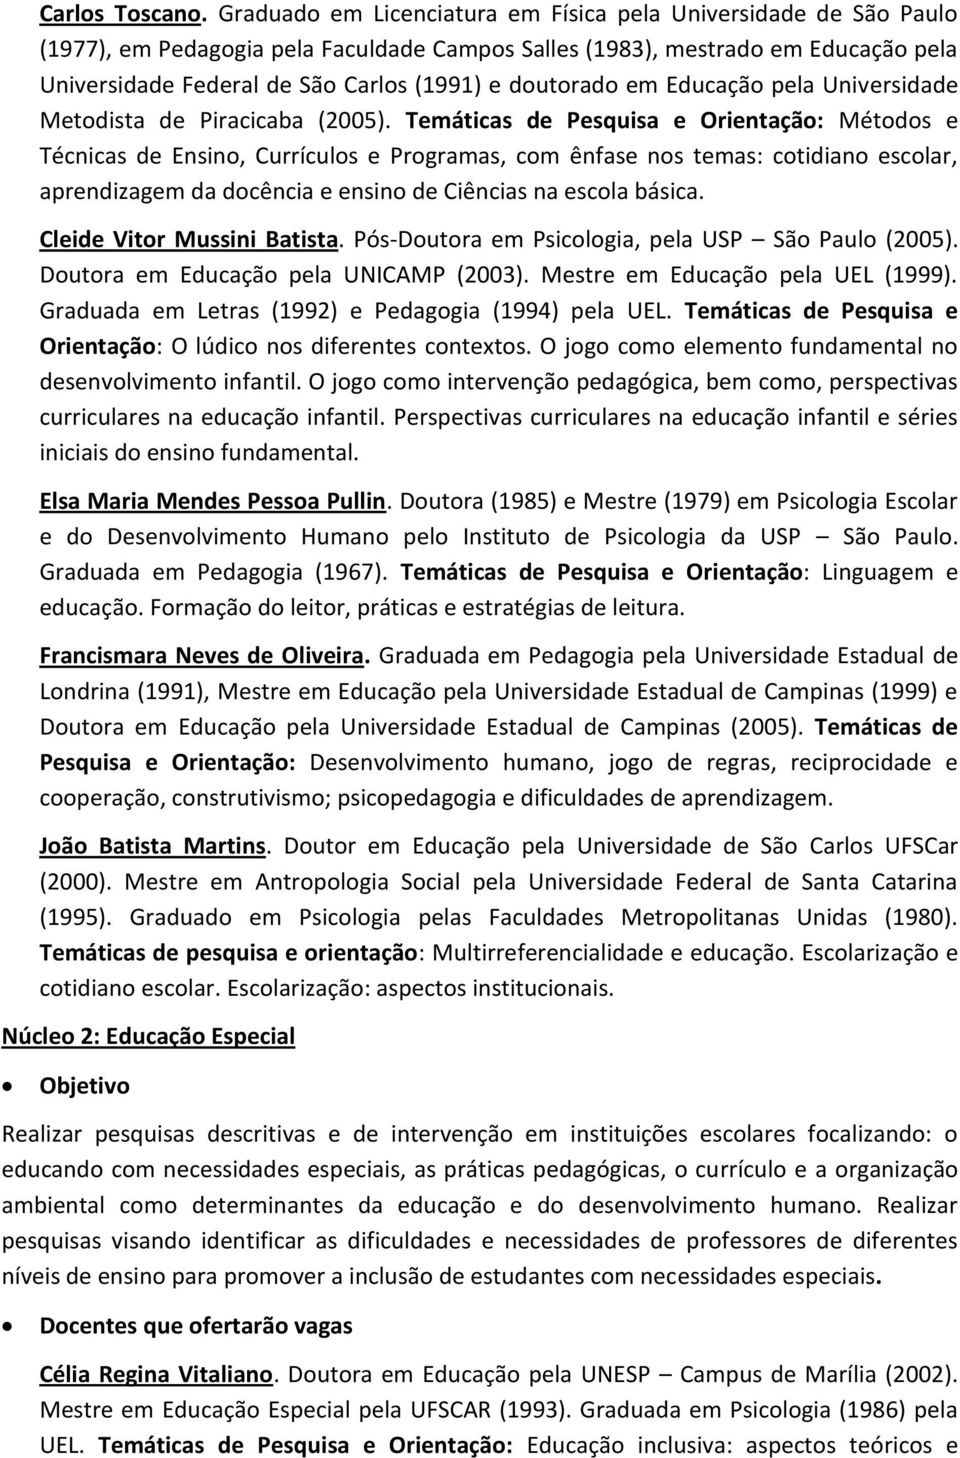 doutorado em Educação pela Universidade Metodista de Piracicaba (2005).